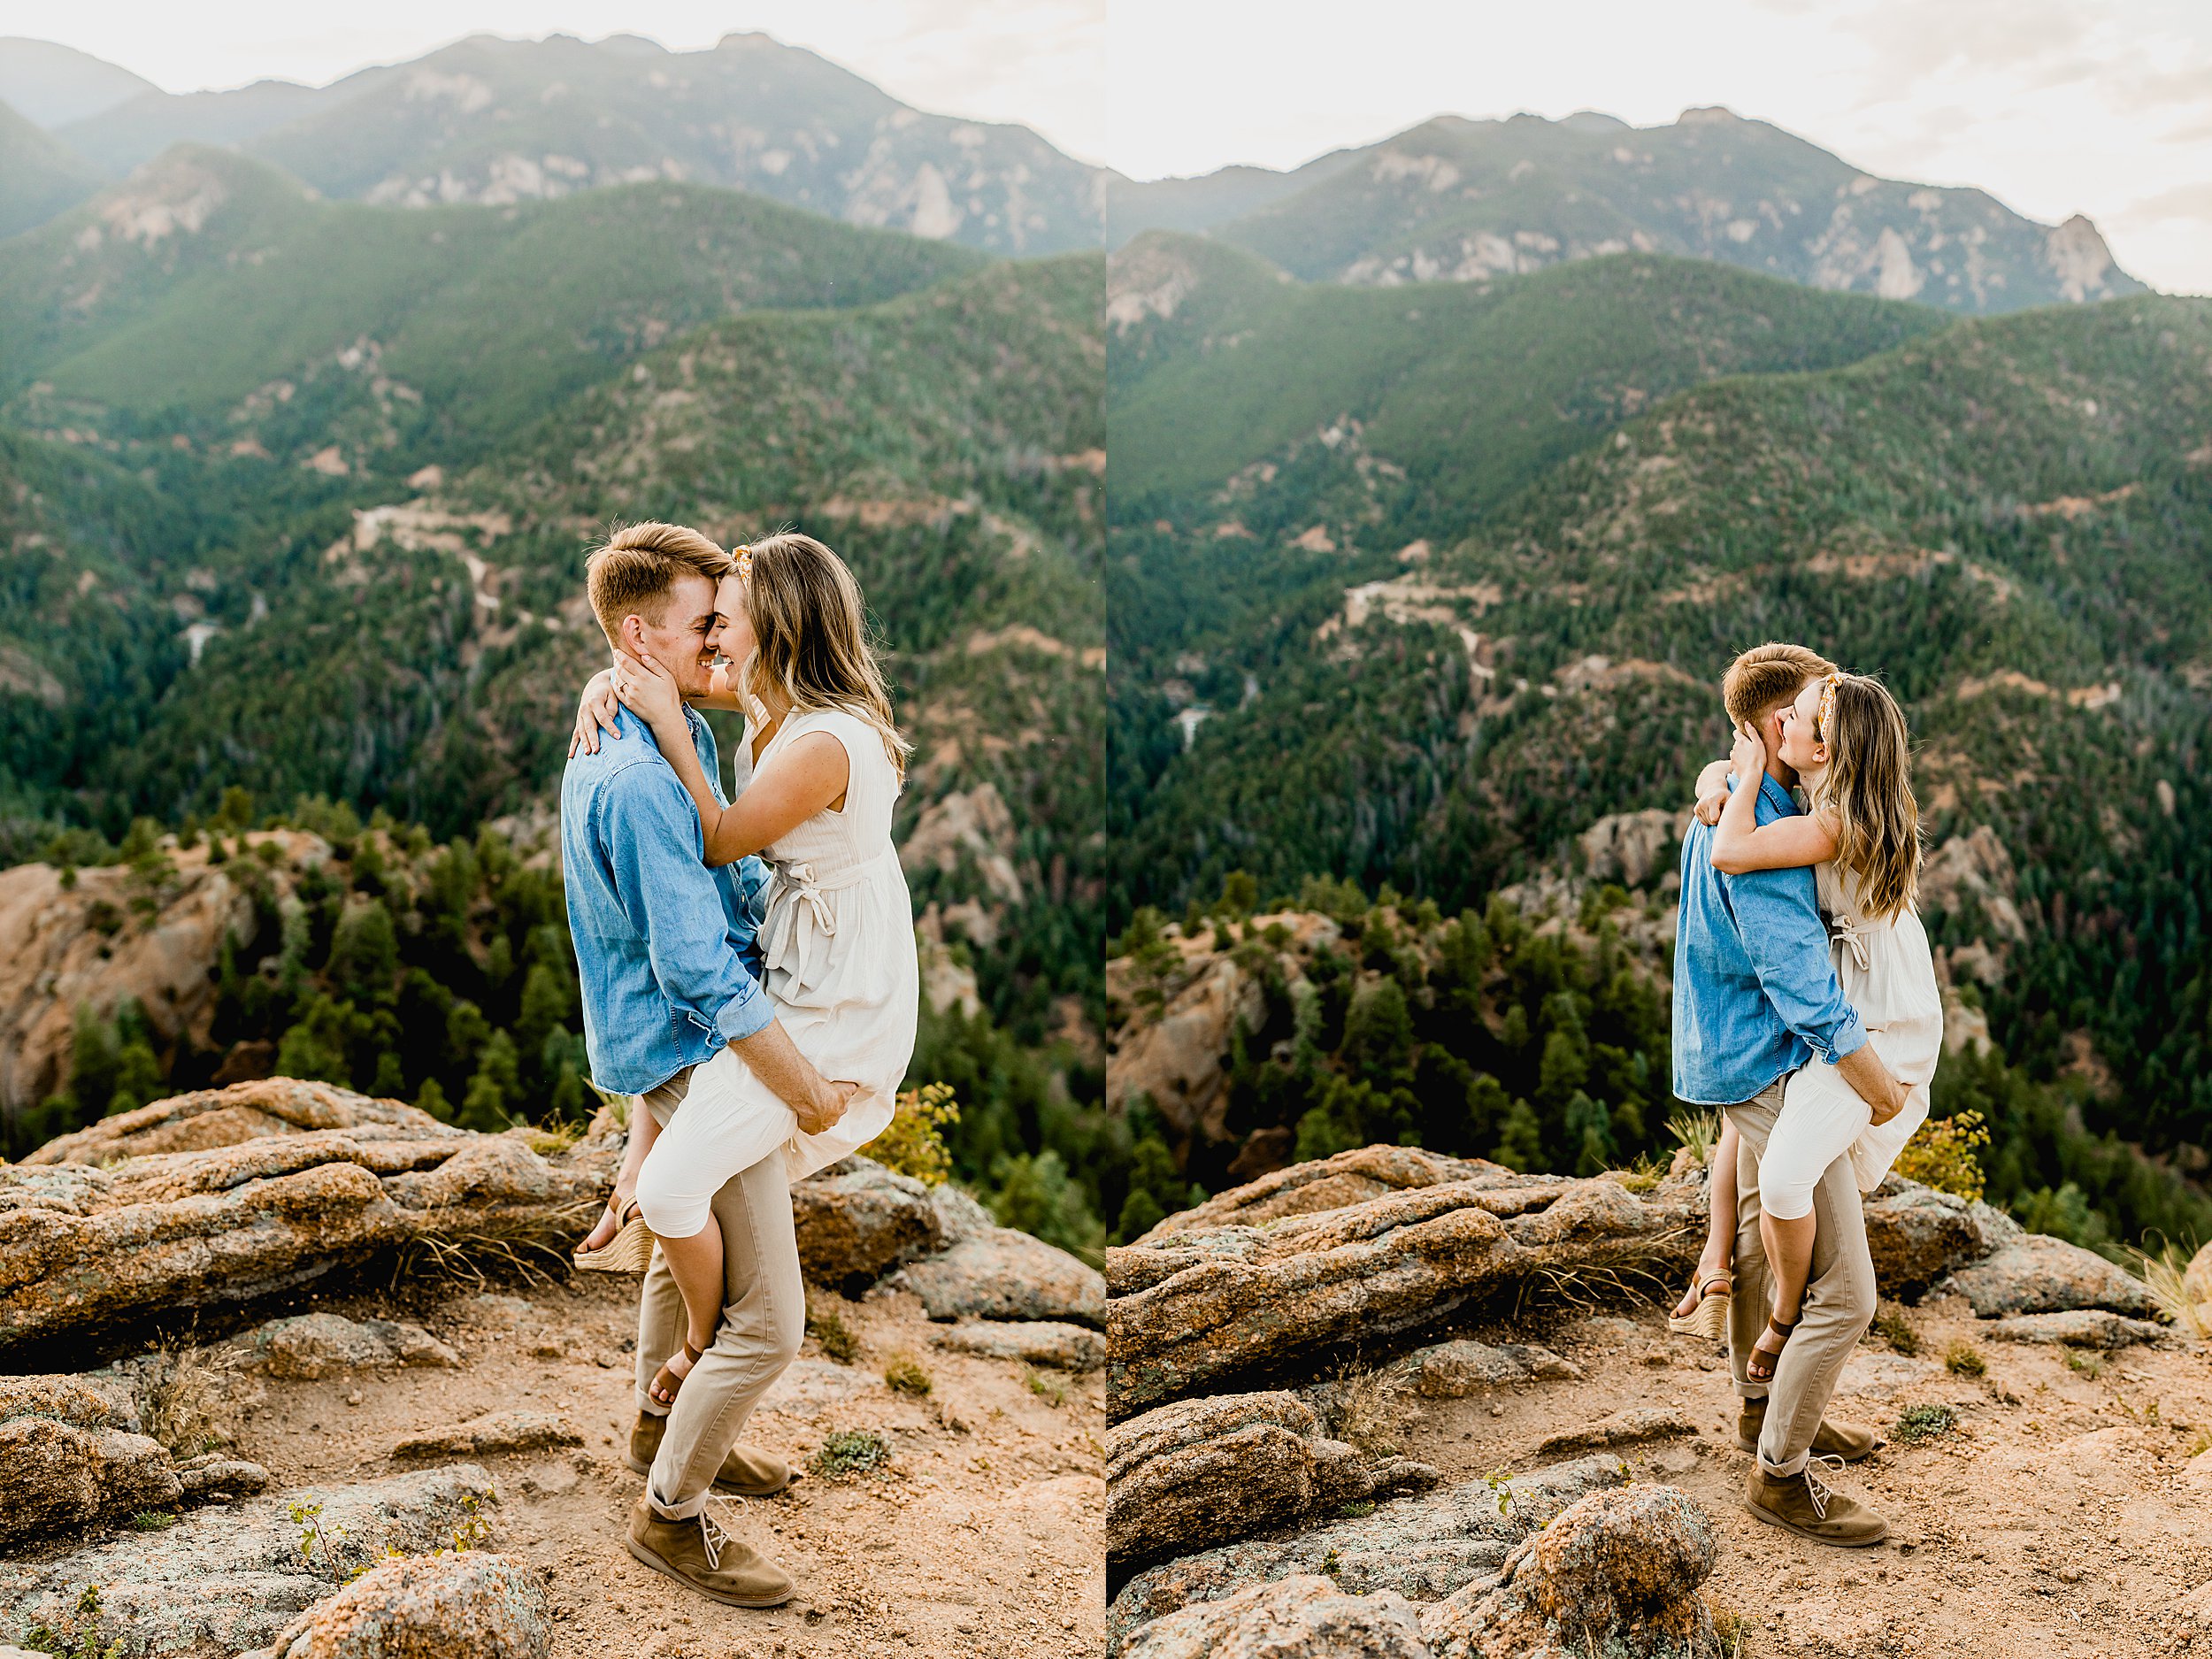 colorado mountain engagement photos, lauren casino photographs a couple in the colorado mountains